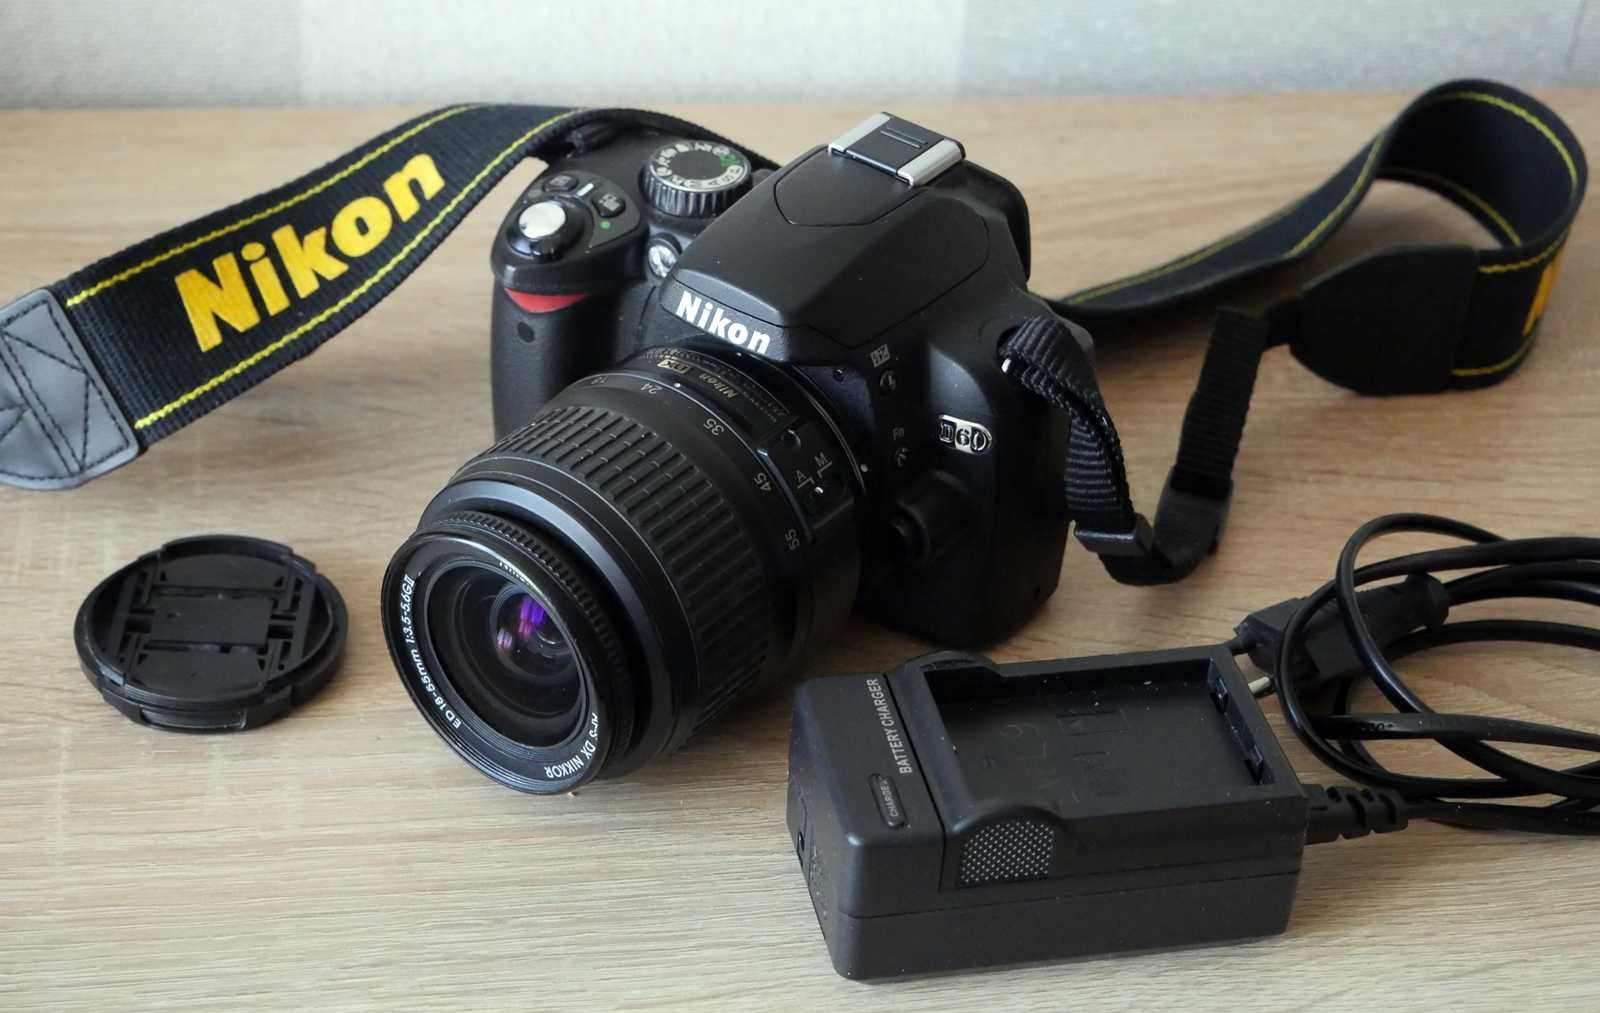 Aparat Nikon D60 jak nowy i torba do wyboru +grip gratis